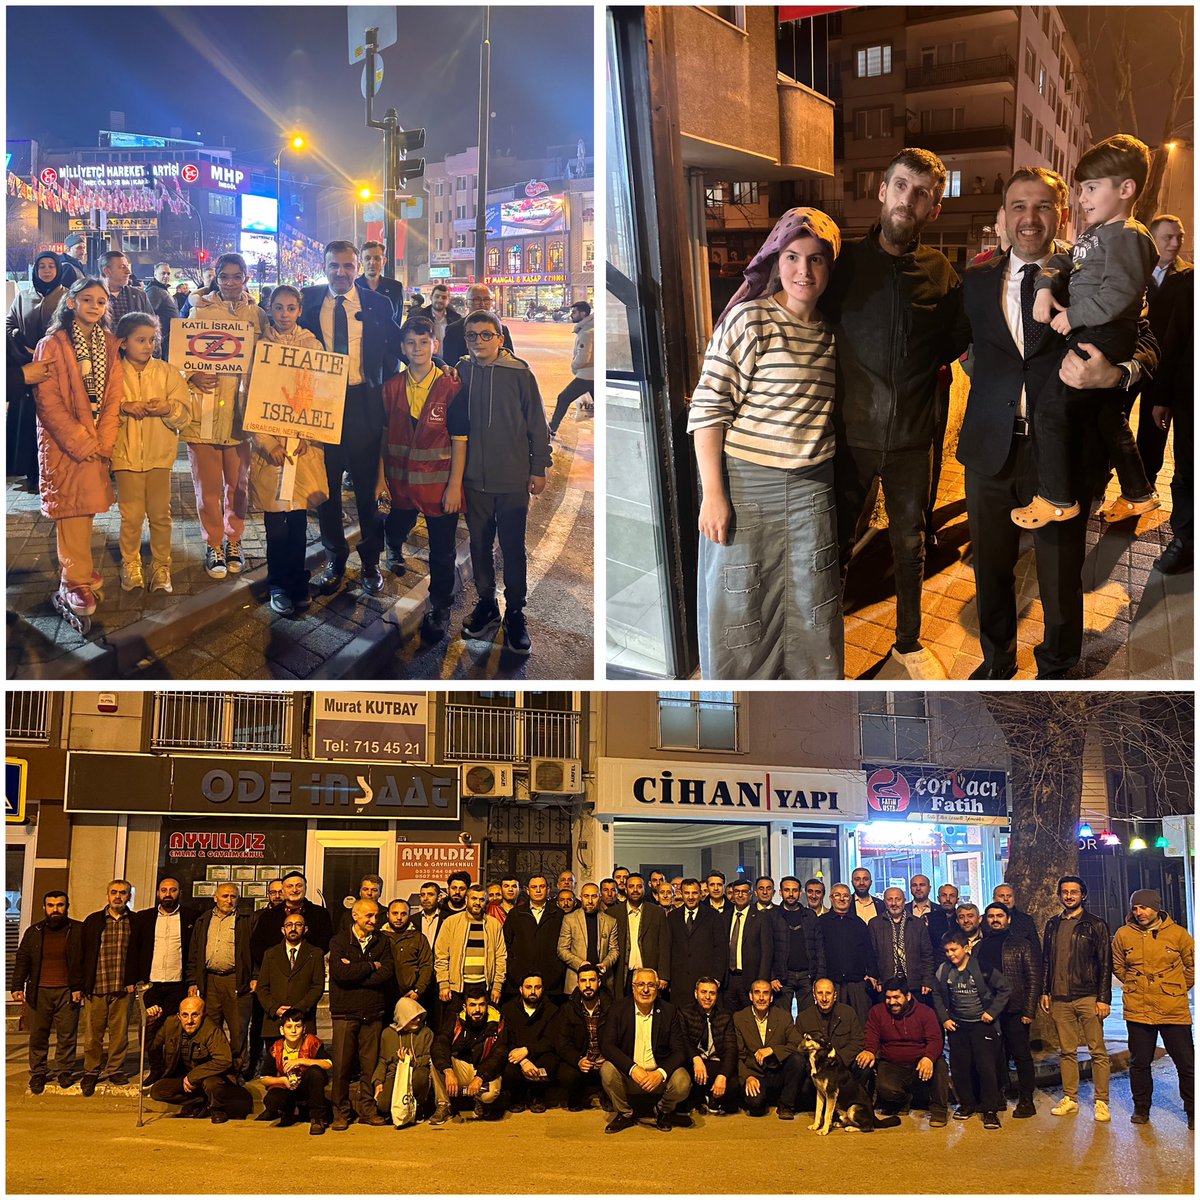 Bu akşam ekibimizle birlikte Sinanbey Mahallemizi ziyaret ettik.
Bizleri büyük bir teveccühle karşılayan mahalle sakinlerimize ve özverili bir çalışma yürüten ekibimize teşekkür ederiz.❤️
#inegöl #başkabirinegölmümkün